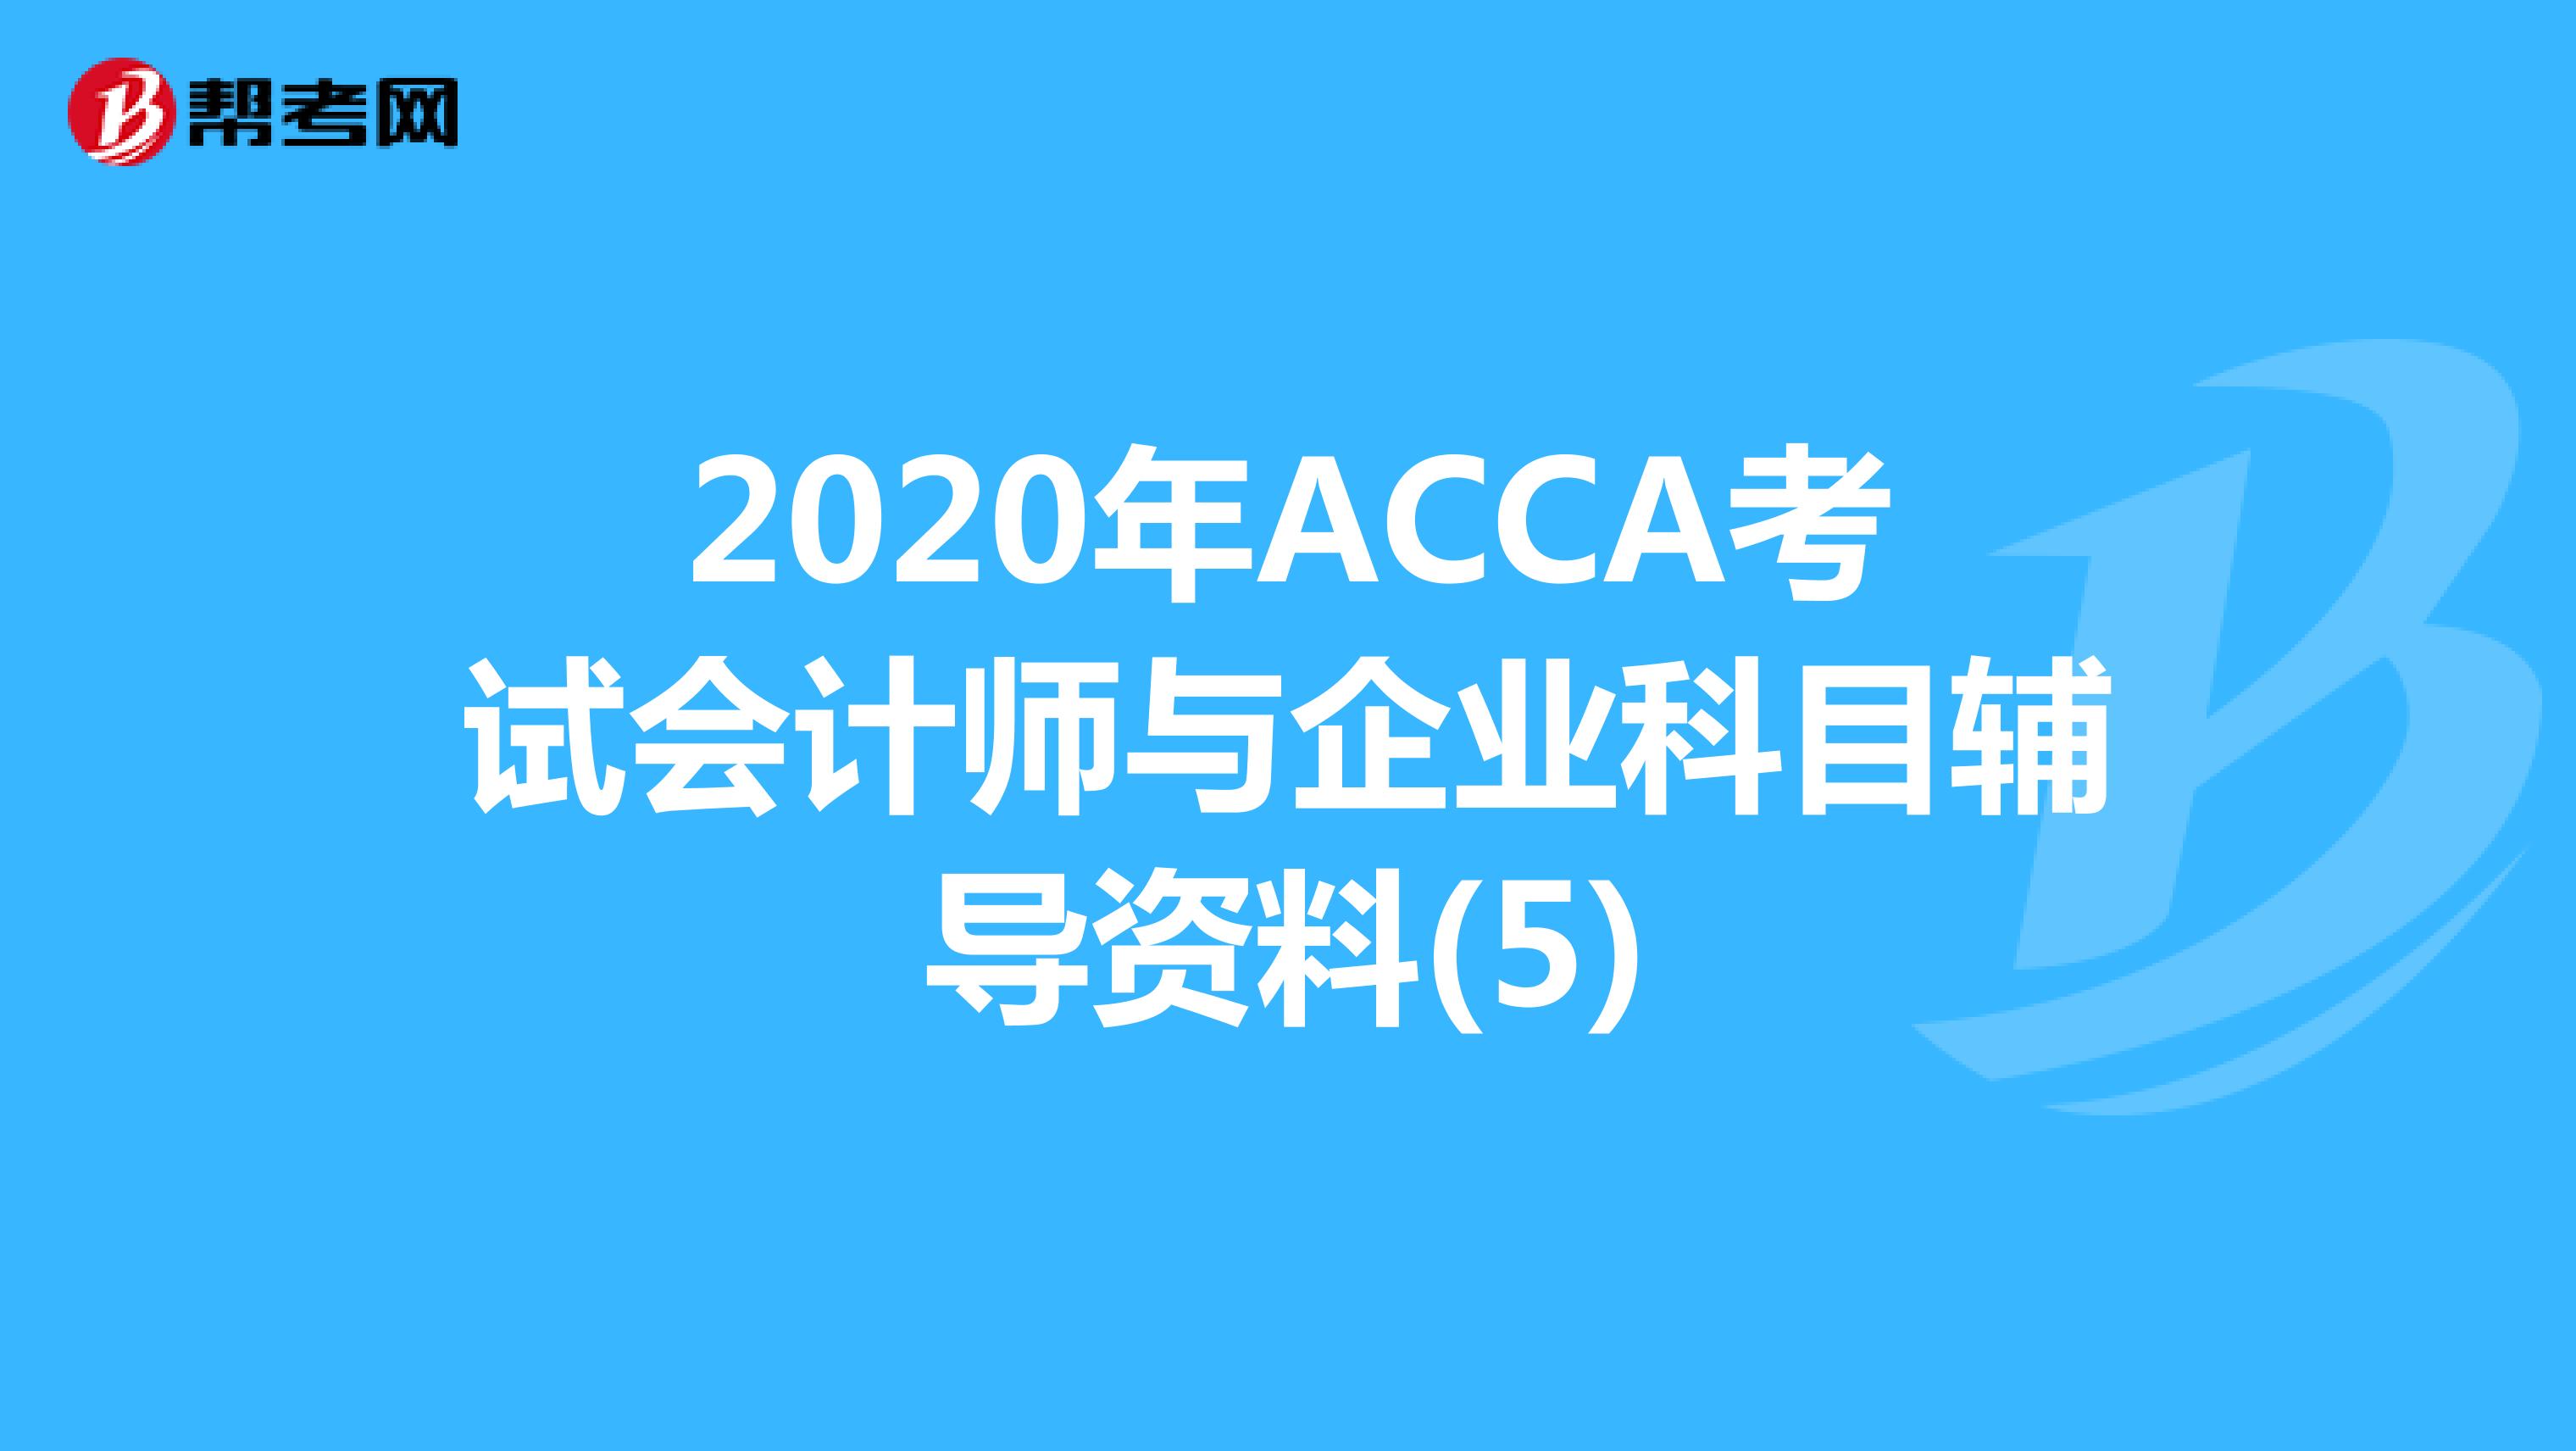 2020年ACCA考试会计师与企业科目辅导资料(5)